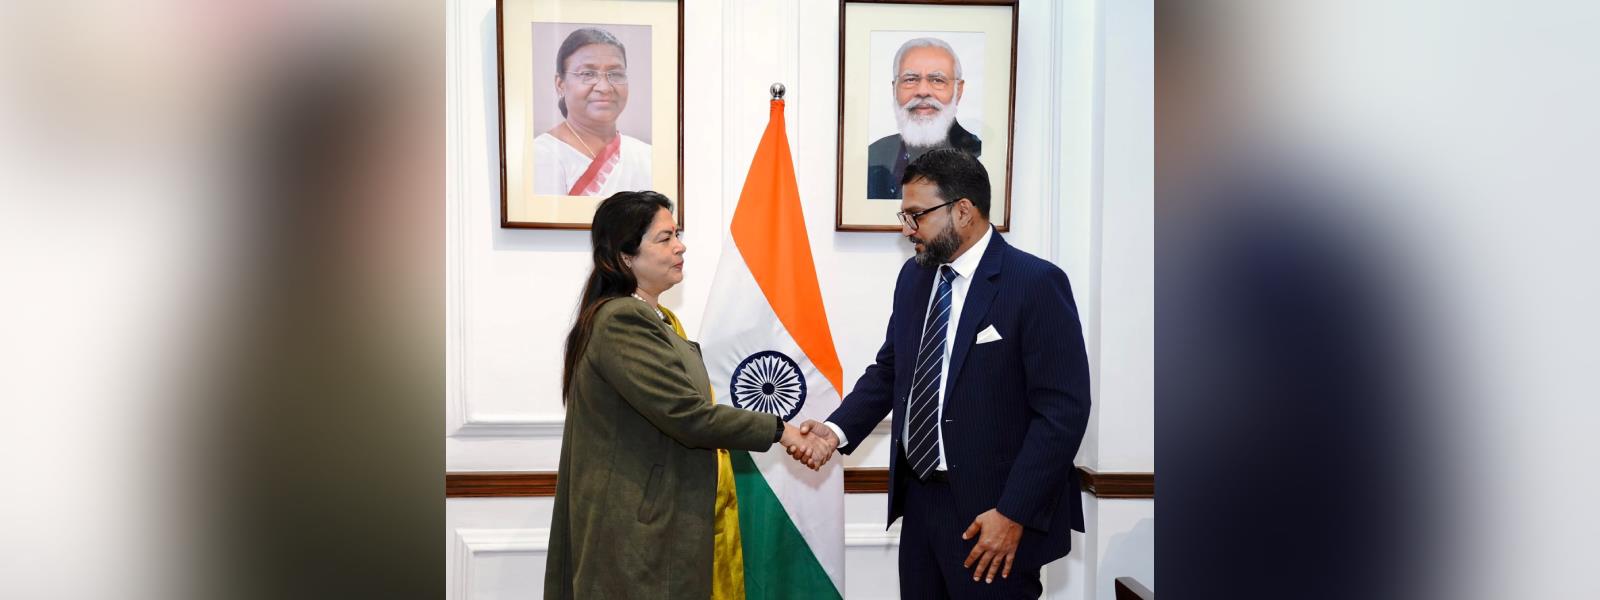 Minister of State for External Affairs Smt. Meenakashi Lekhi met H.E. Mr. Tharaka Balasuriya, Minister of State of Foreign Affairs of Sri Lanka in New Delhi